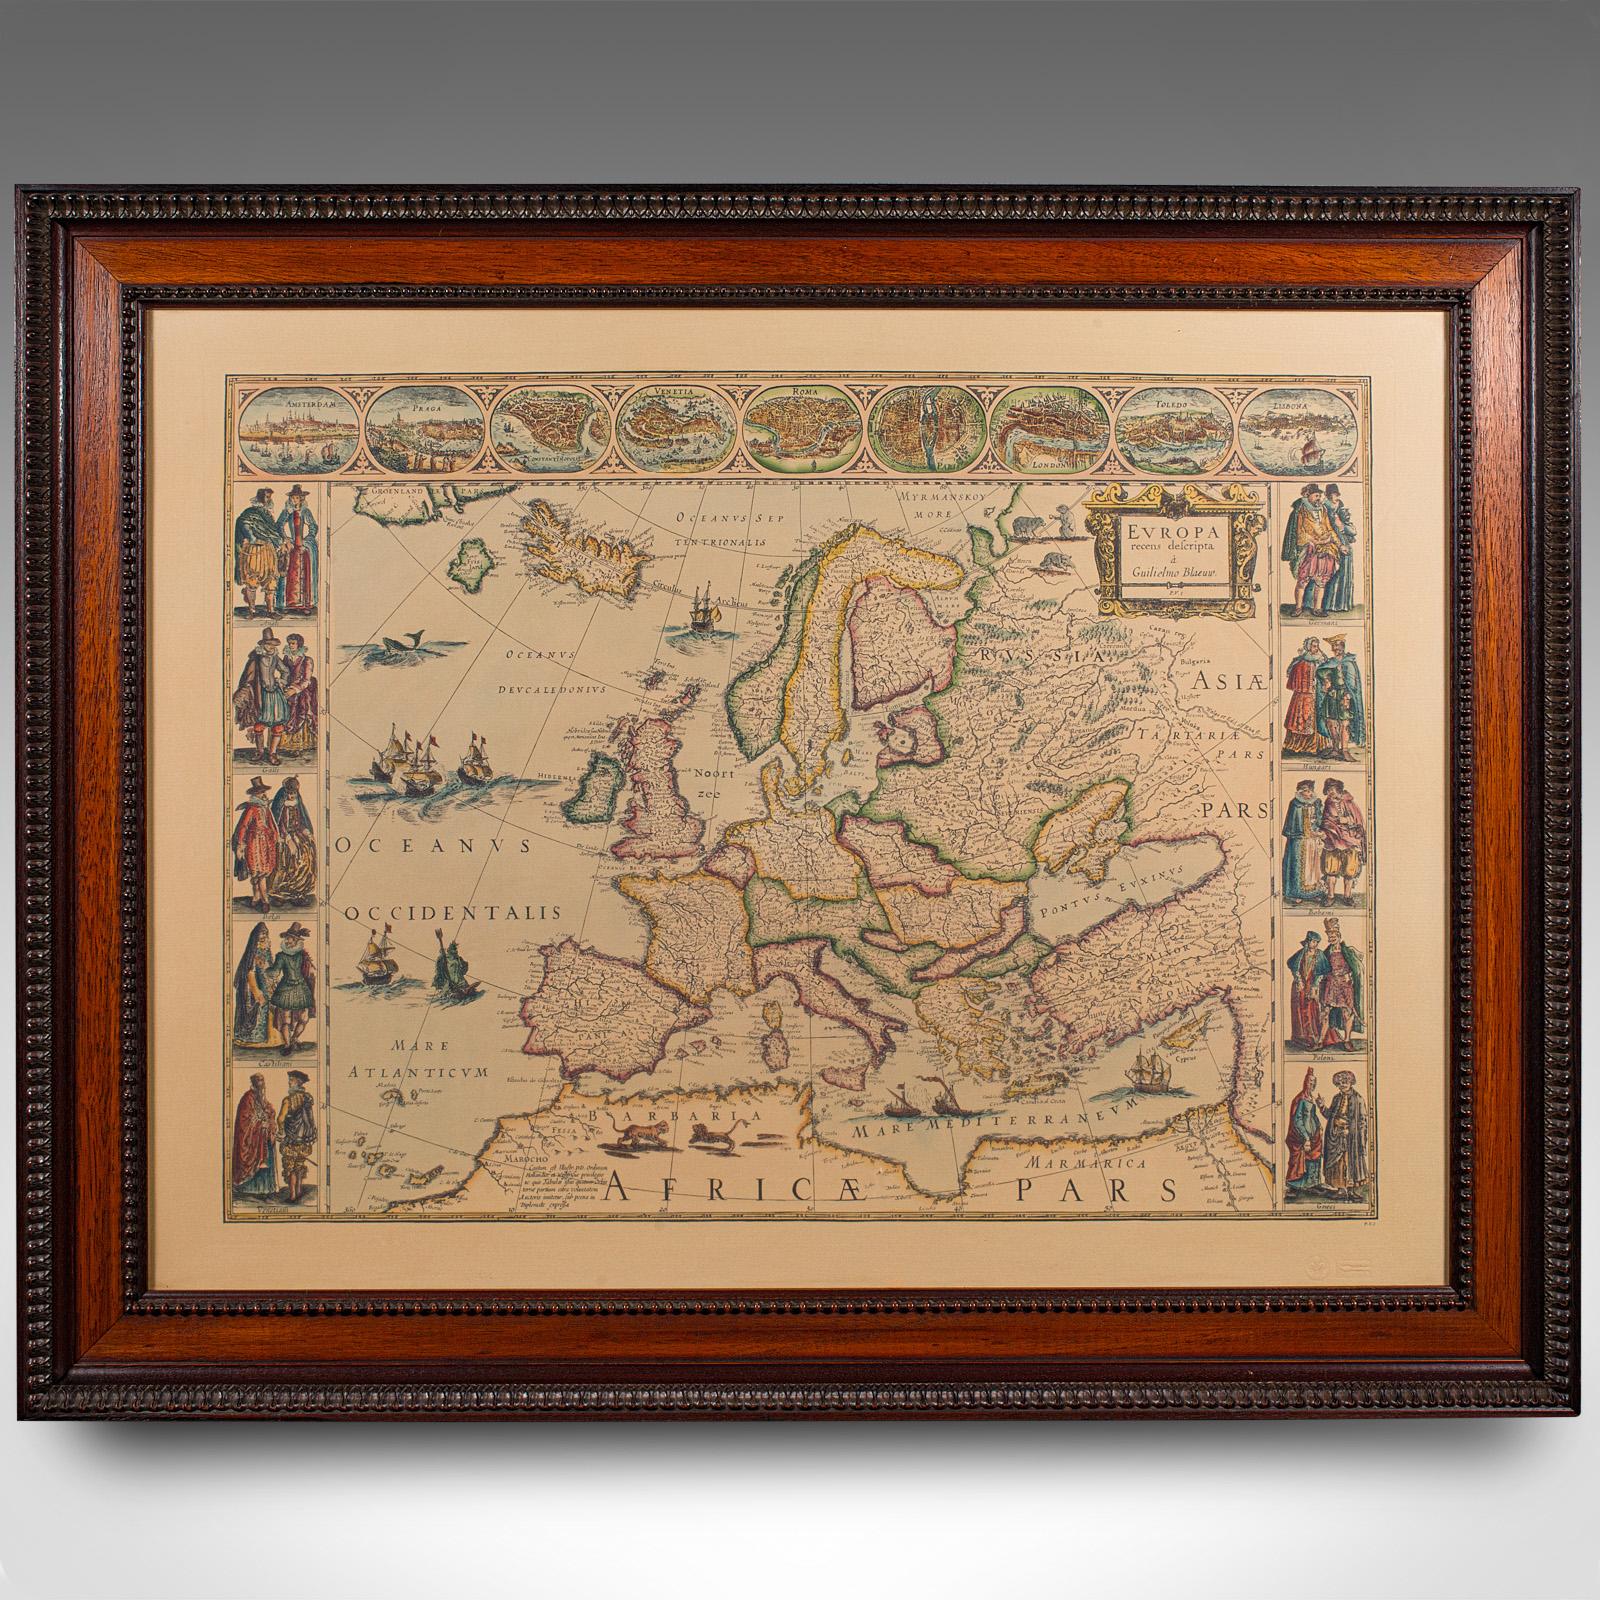 Il s'agit d'une reproduction vintage d'une carte de l'Europe. Gravure cartographique américaine sur papier dans un cadre d'après l'œuvre de Blaeuw, datant de la fin du XXe siècle, vers 1970.

Fascinante reproduction de la cartographie historique de